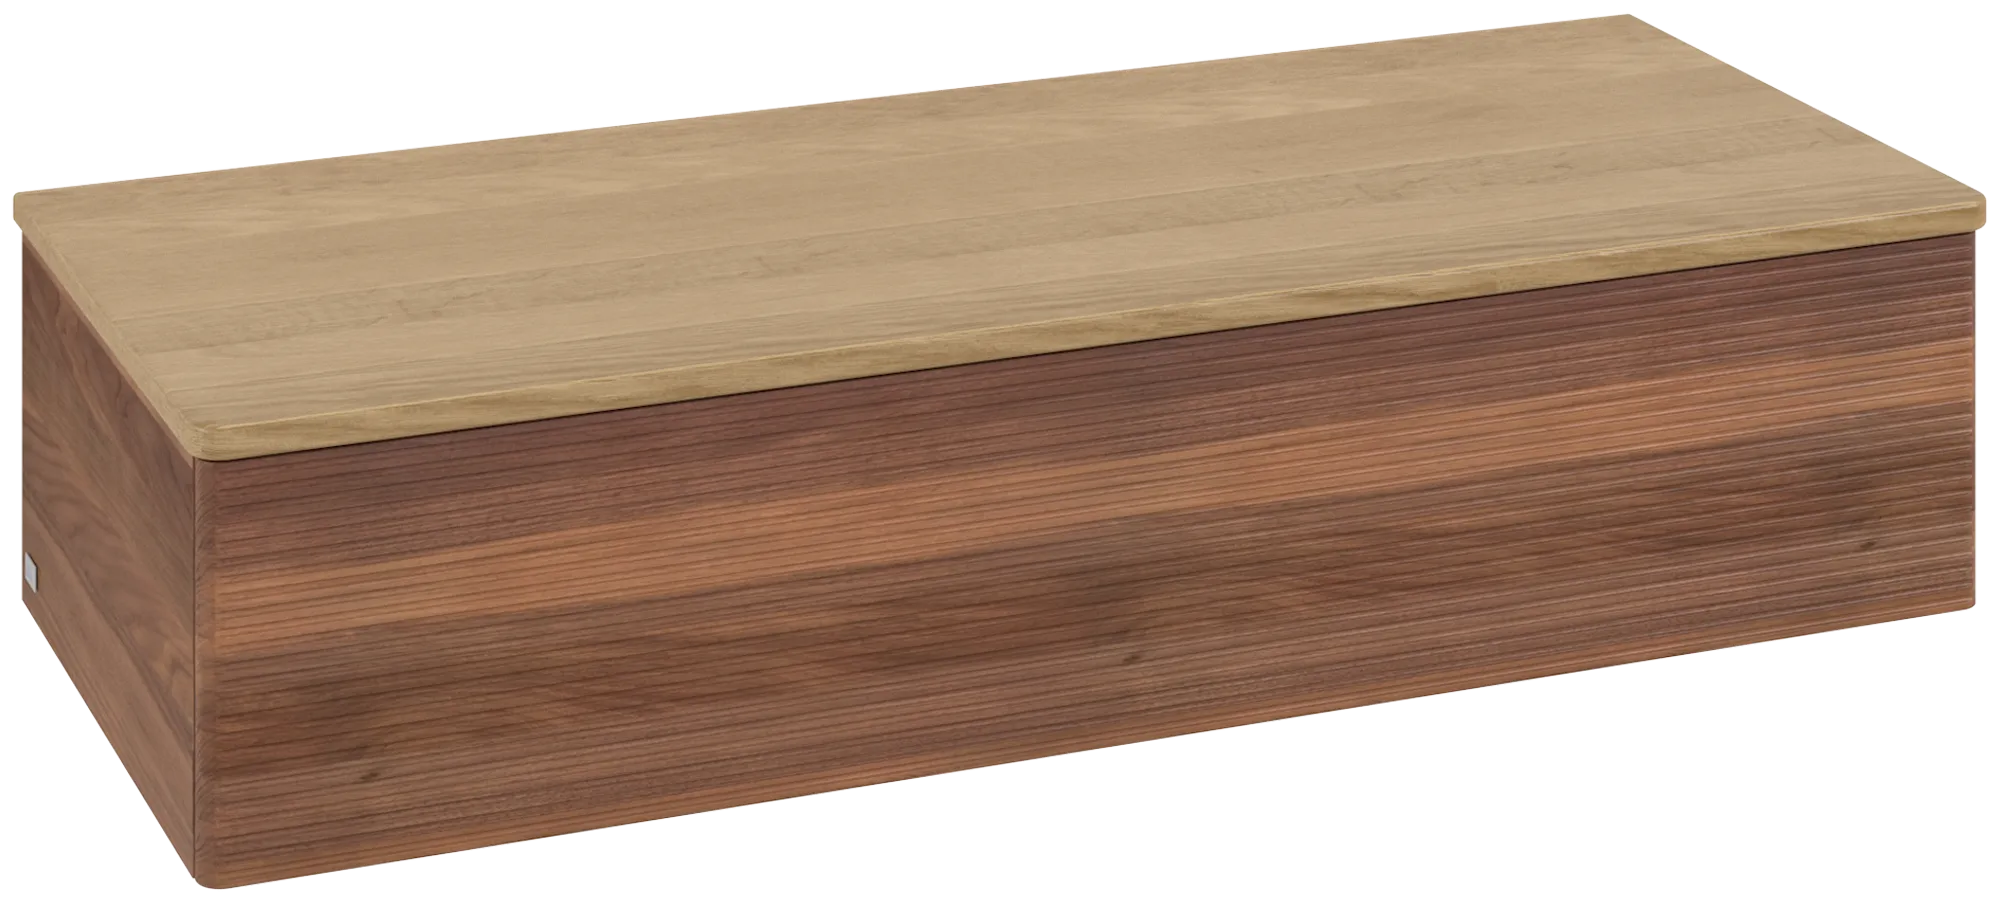 Bild von VILLEROY BOCH Antao Sideboard, 1 Auszug, 1200 x 268 x 500 mm, Front mit Struktur, Warm Walnut / Honey Oak #K41101HM